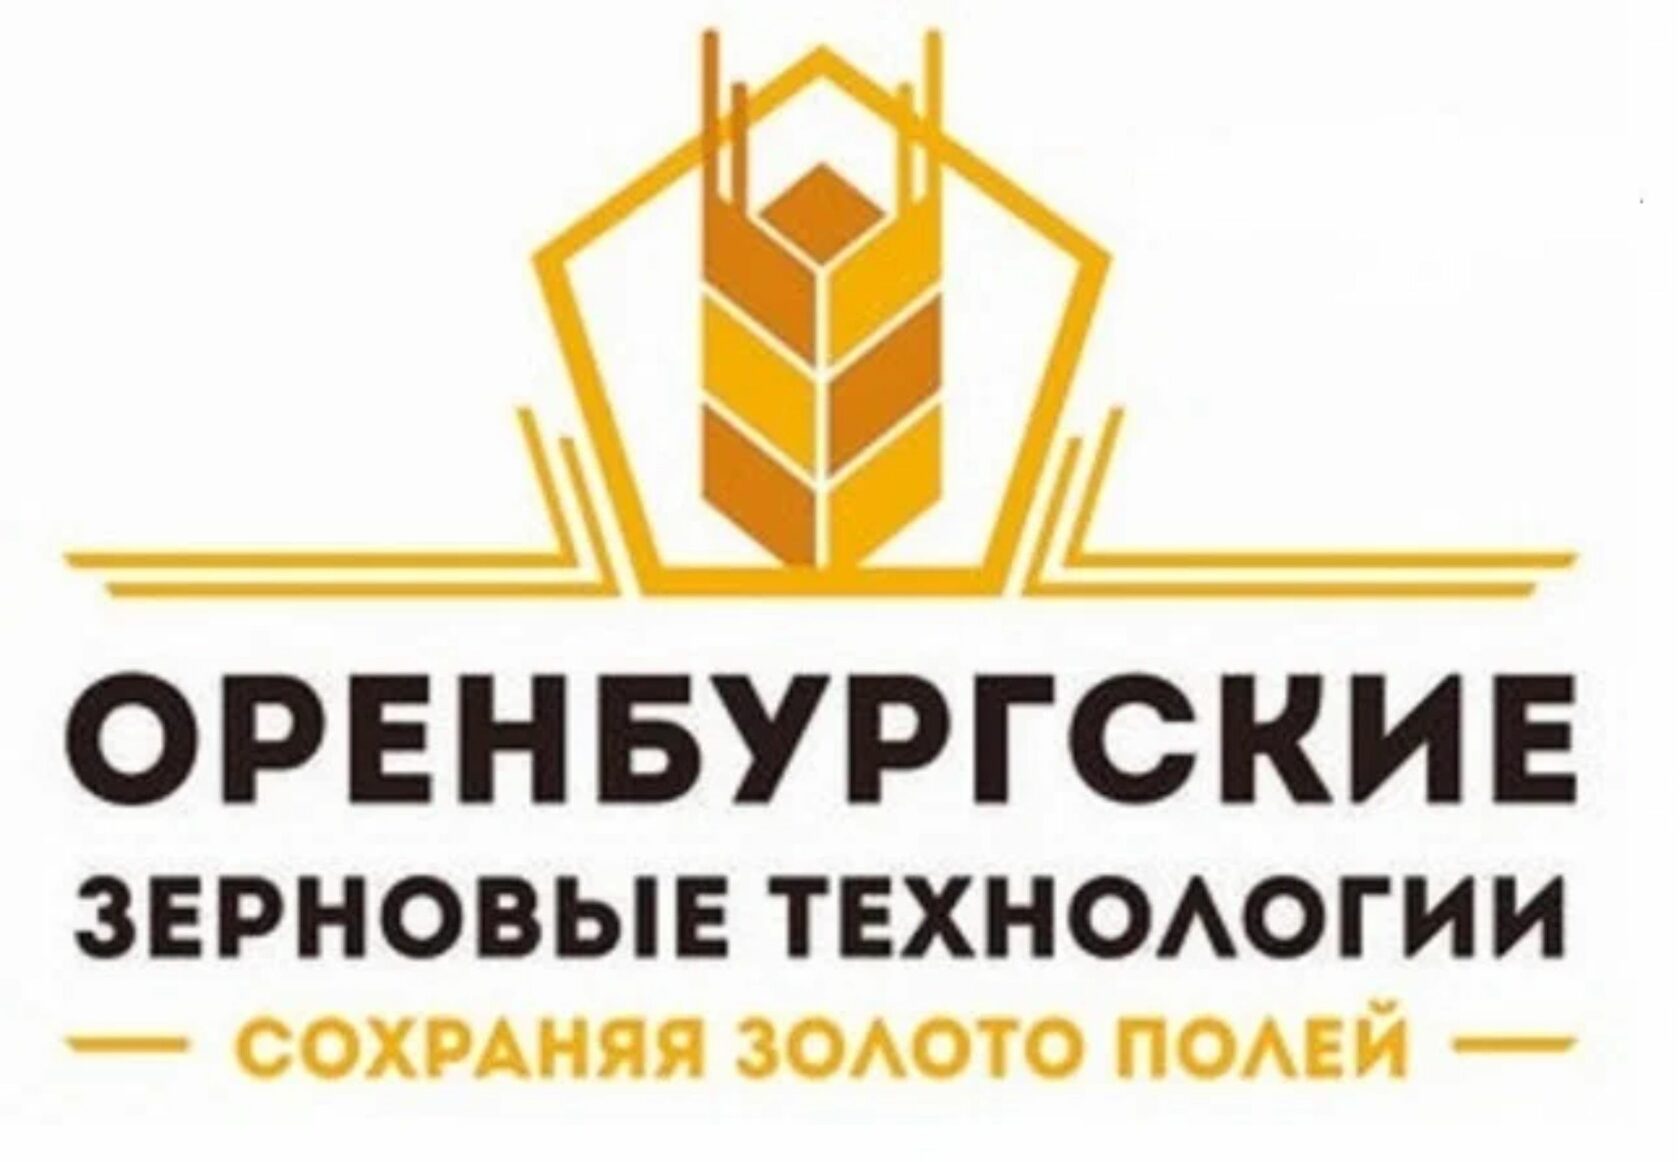 Зерновые технологии Оренбург